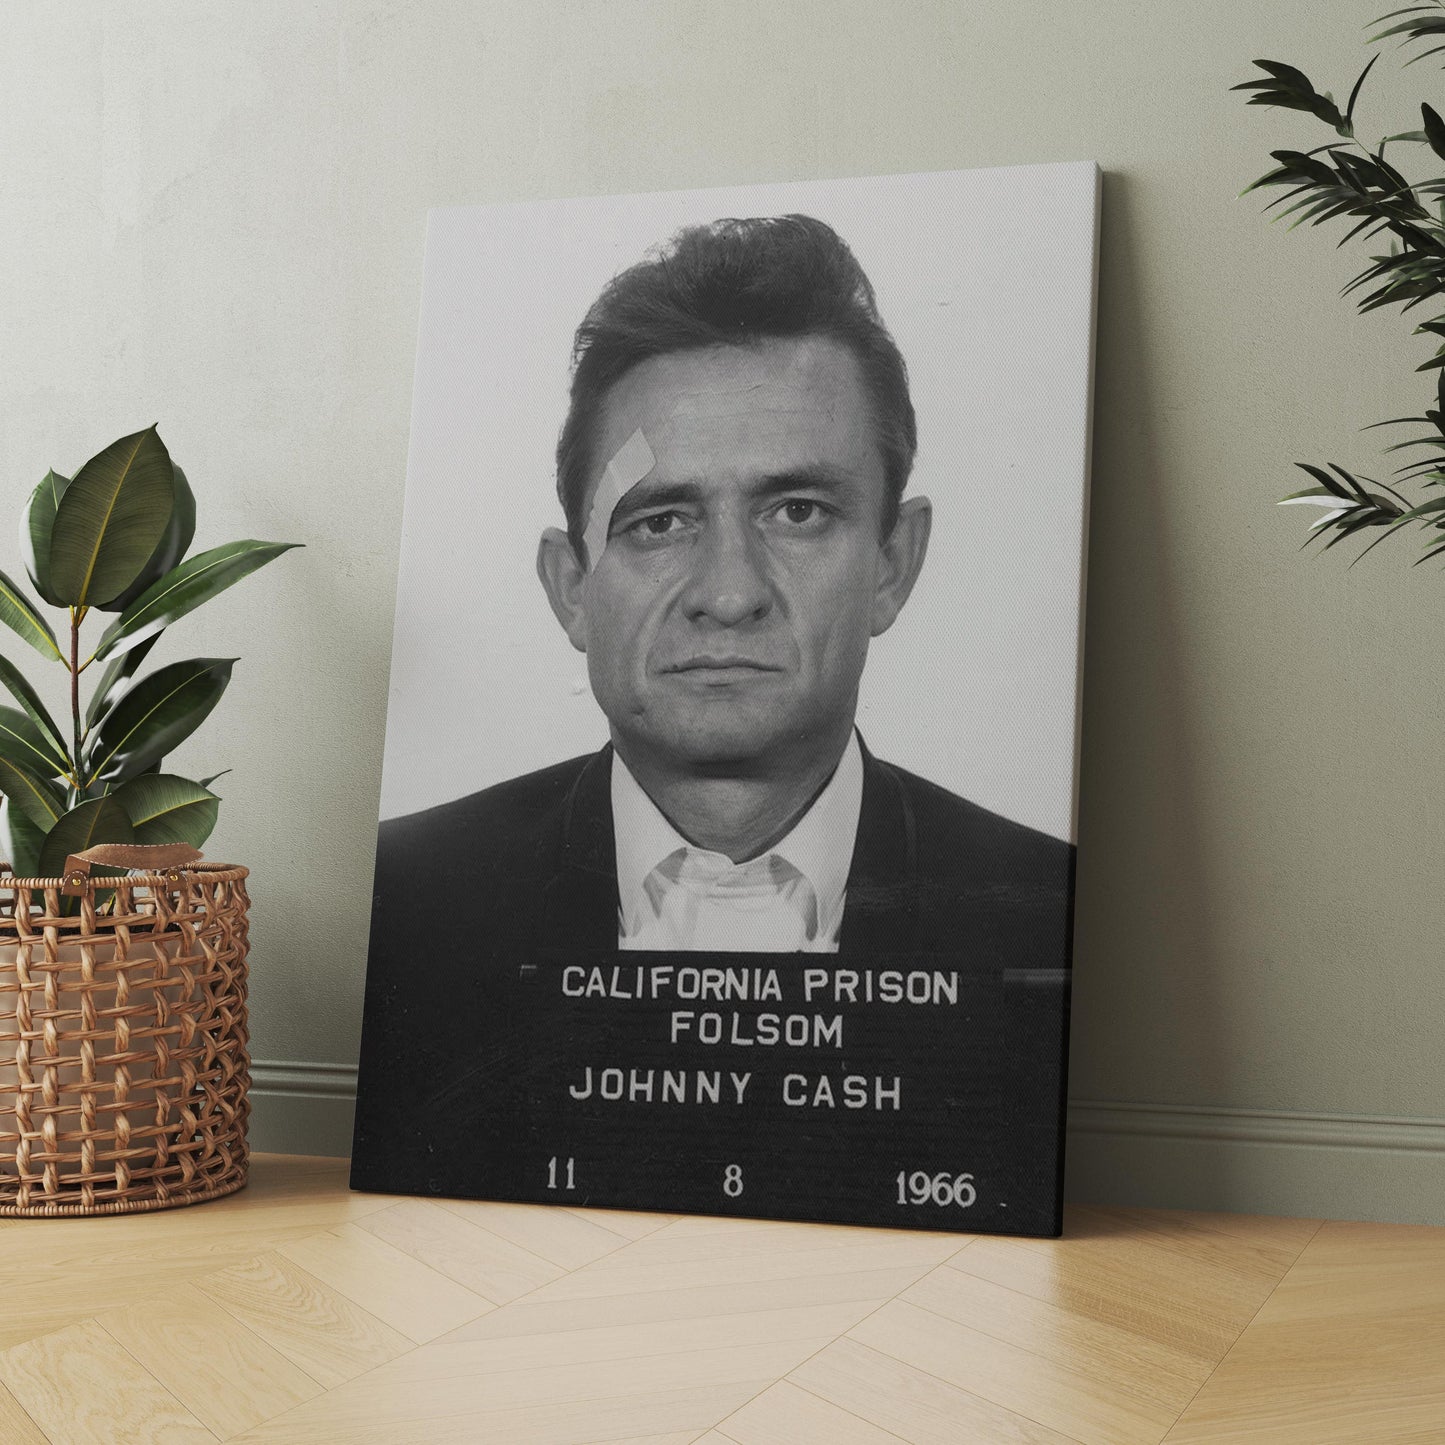 Johnny Cash Prison Mug Shot